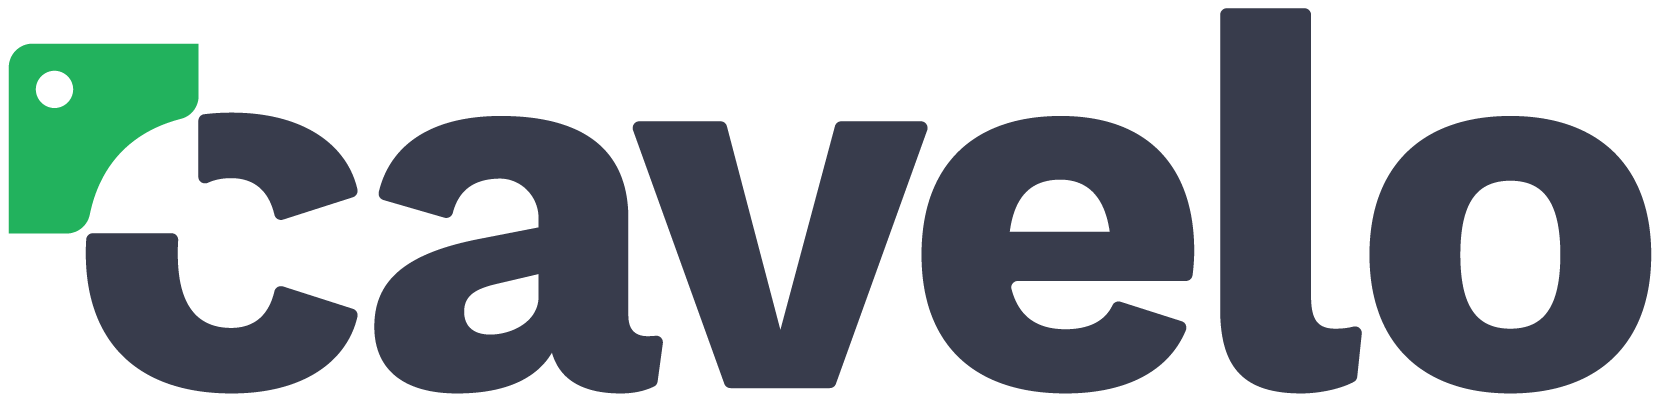 Cavelo Logo